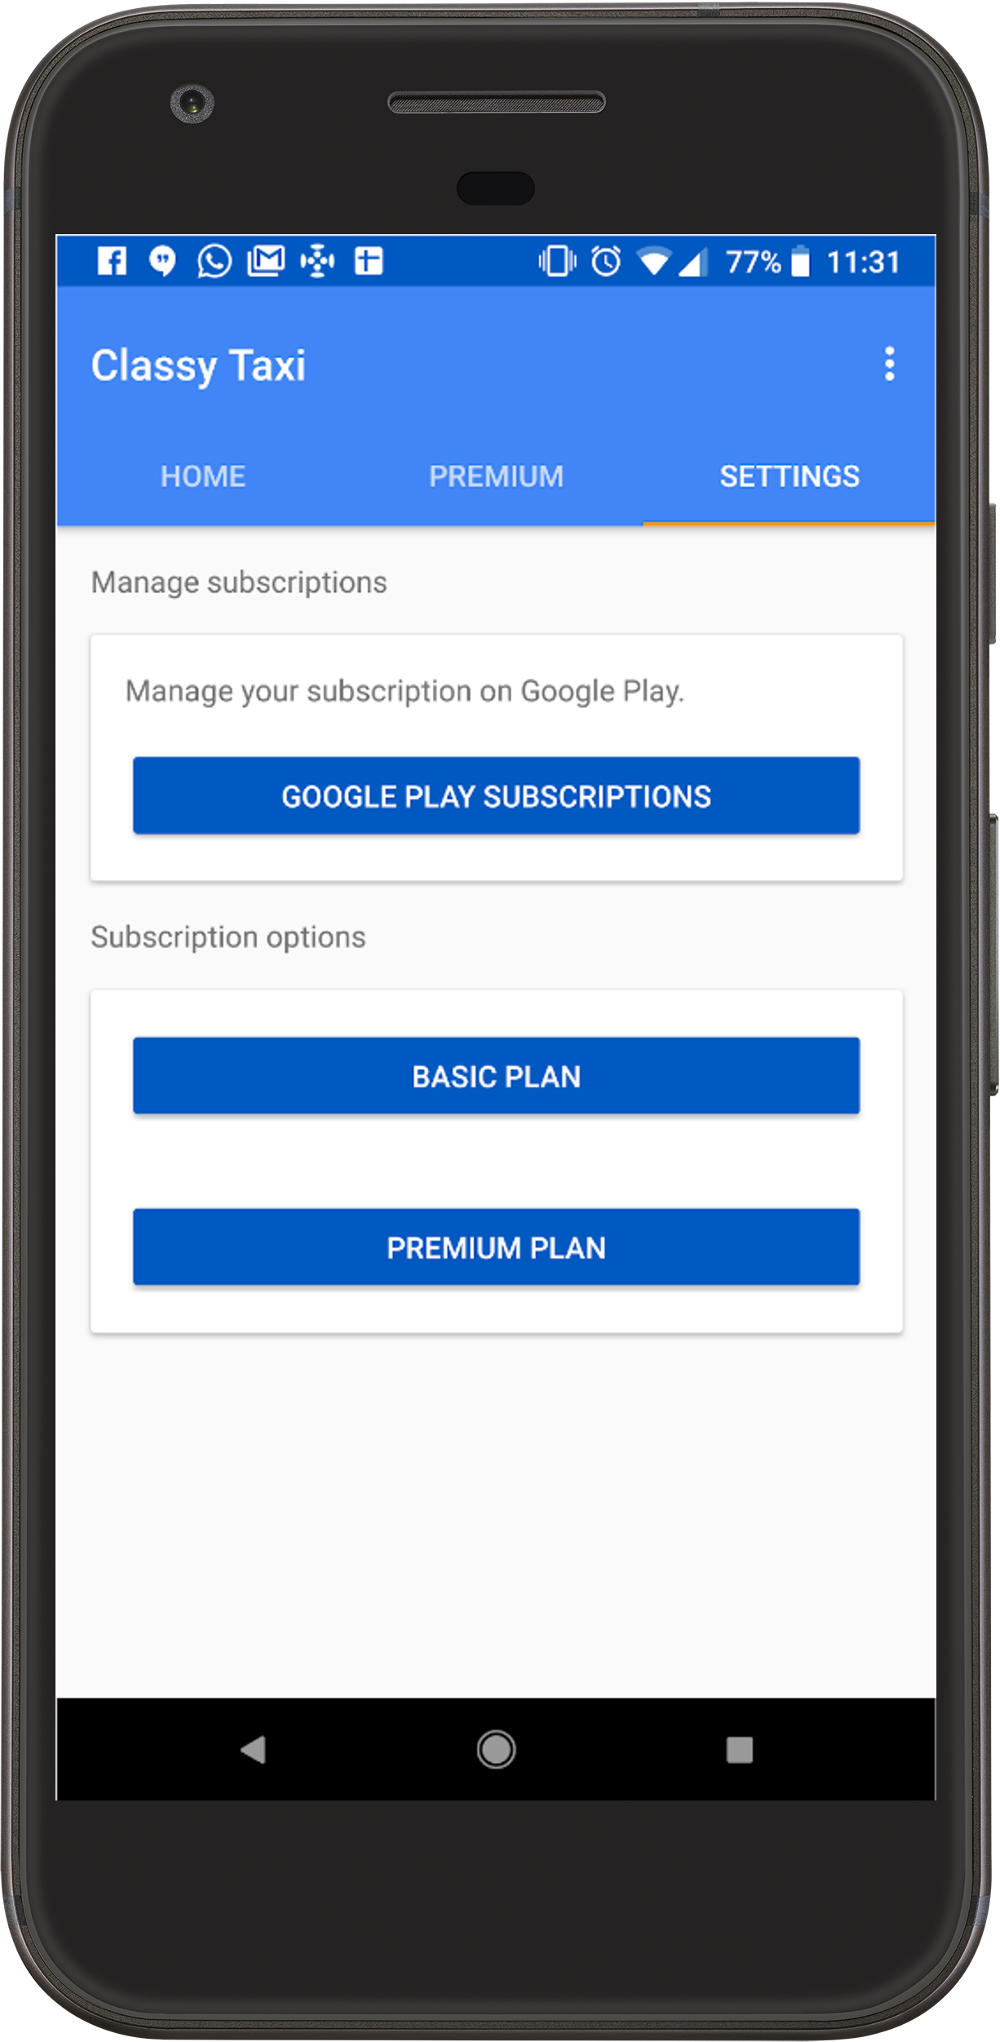 「定期購入を管理」するリンクの例（画像内の [Google Play Subscriptions] ボタン）。